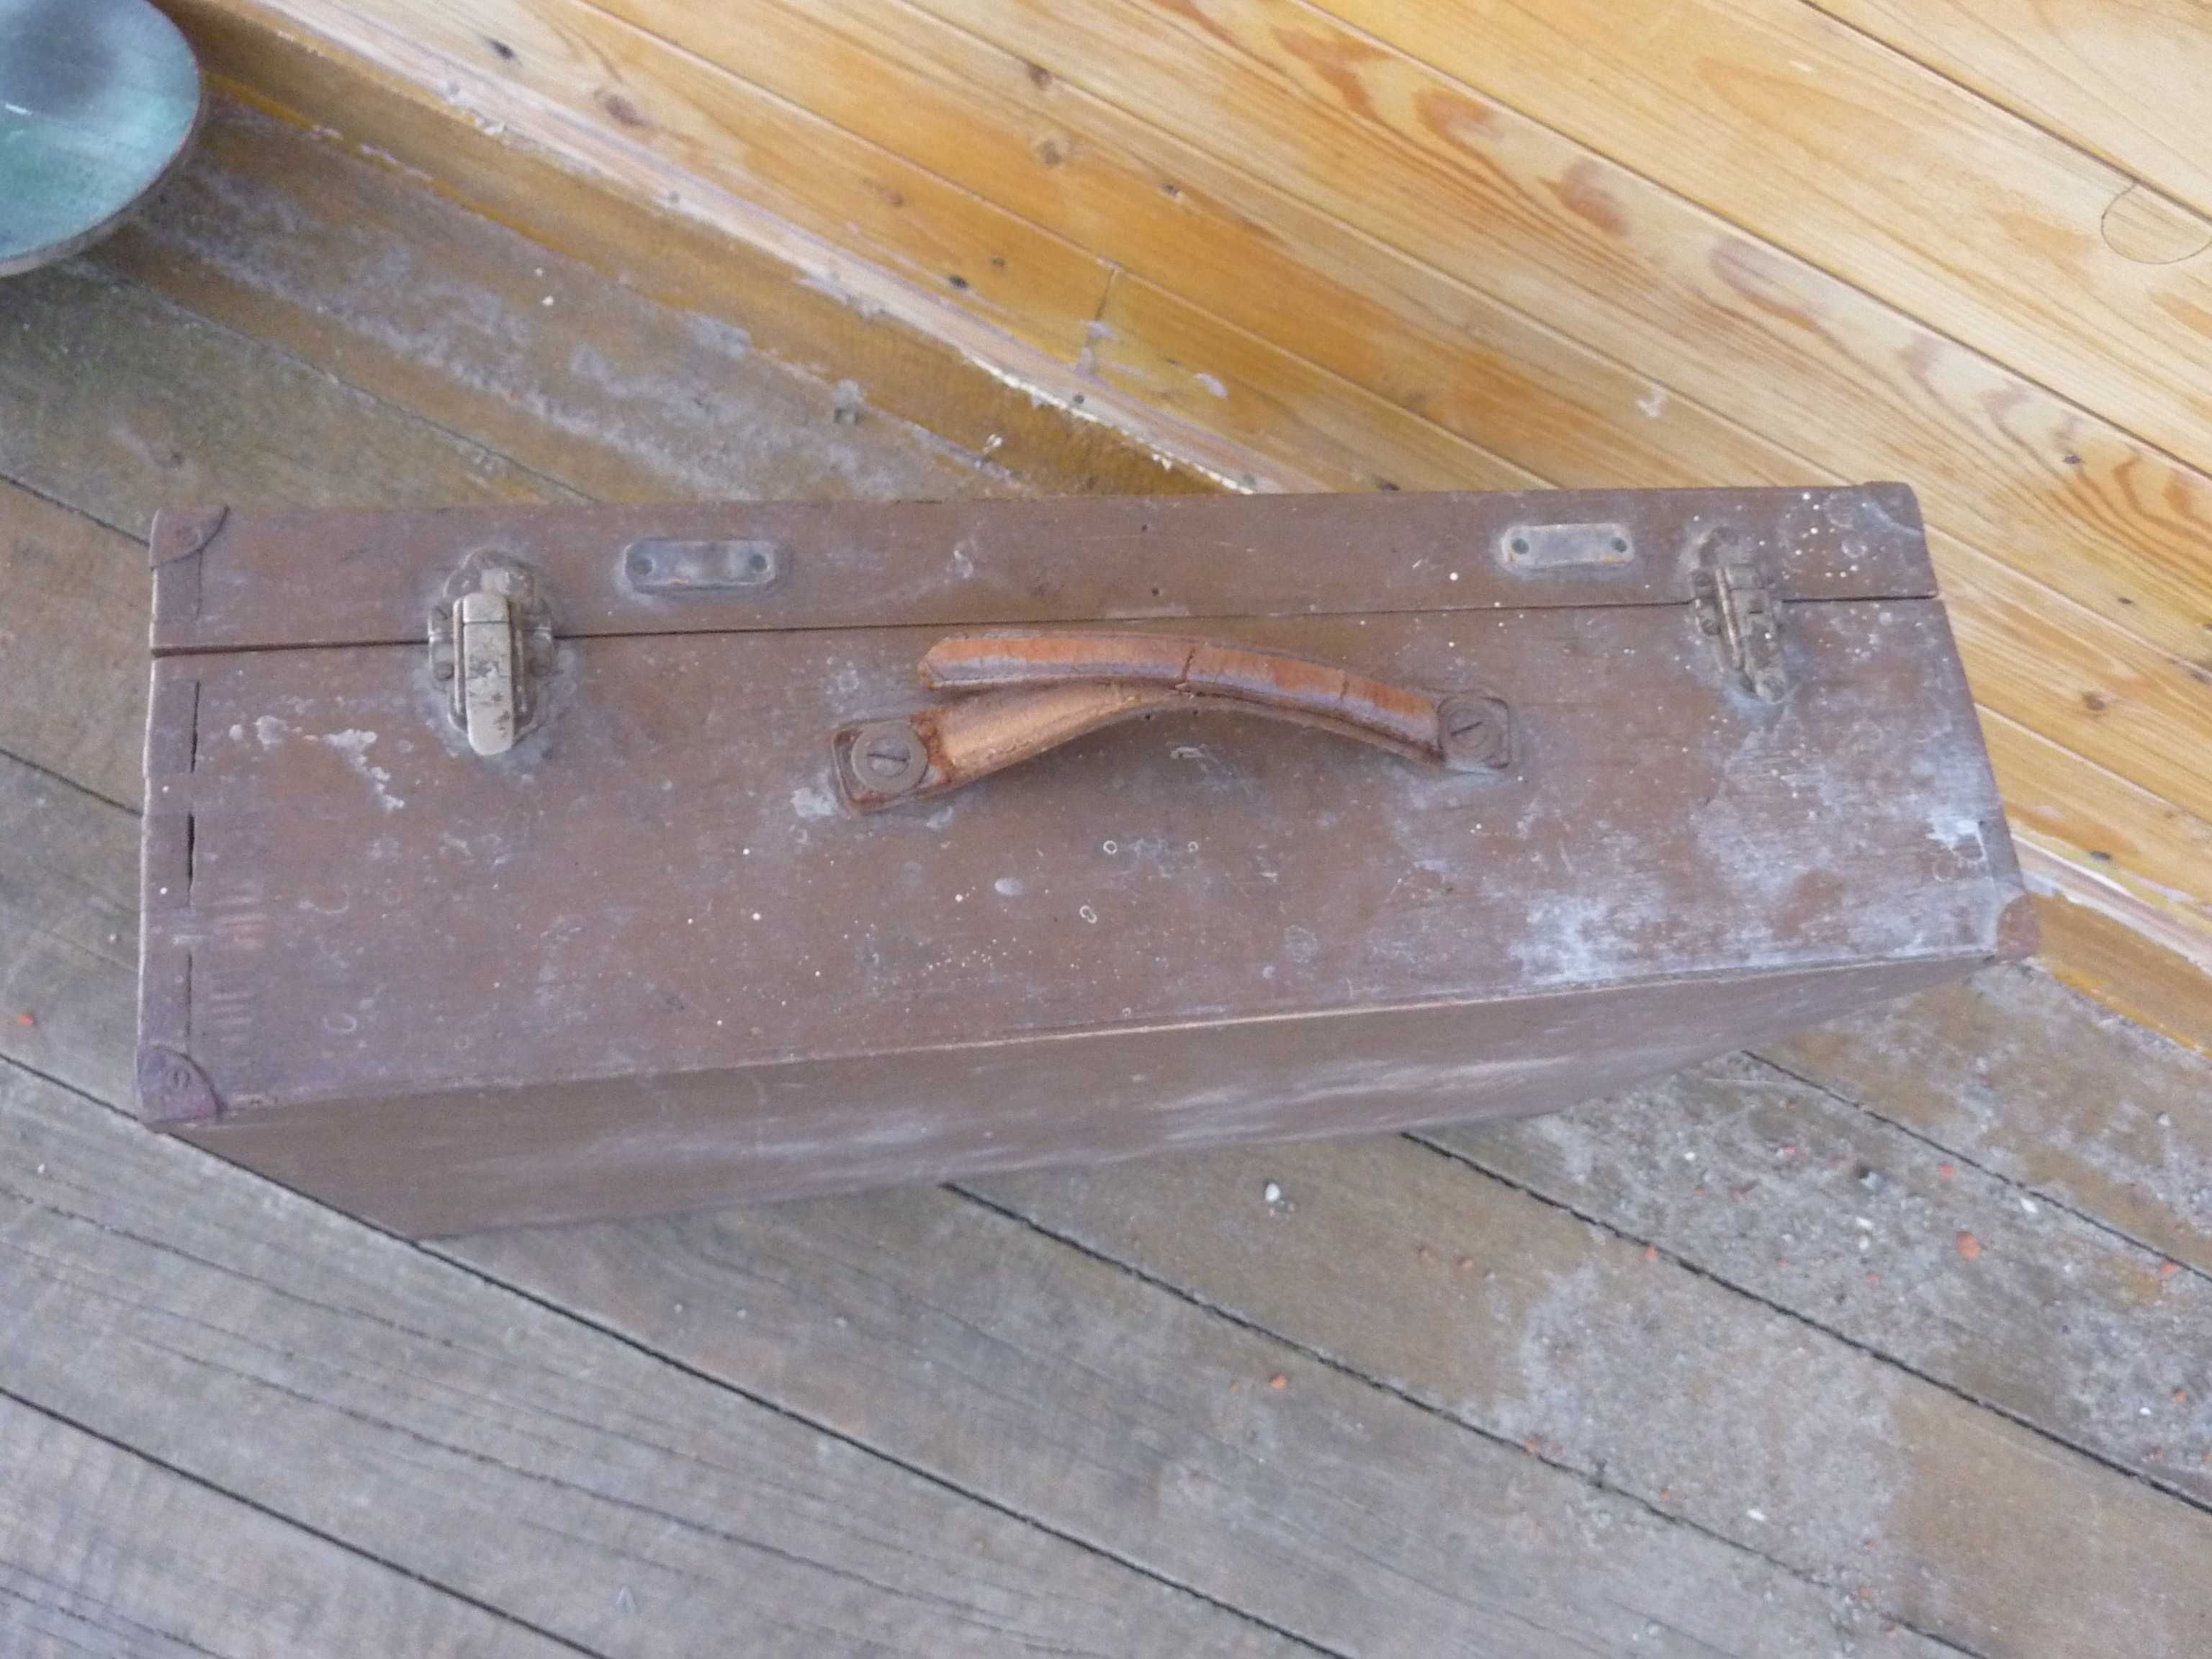 Stara drewniana walizka z lat czterdziestych